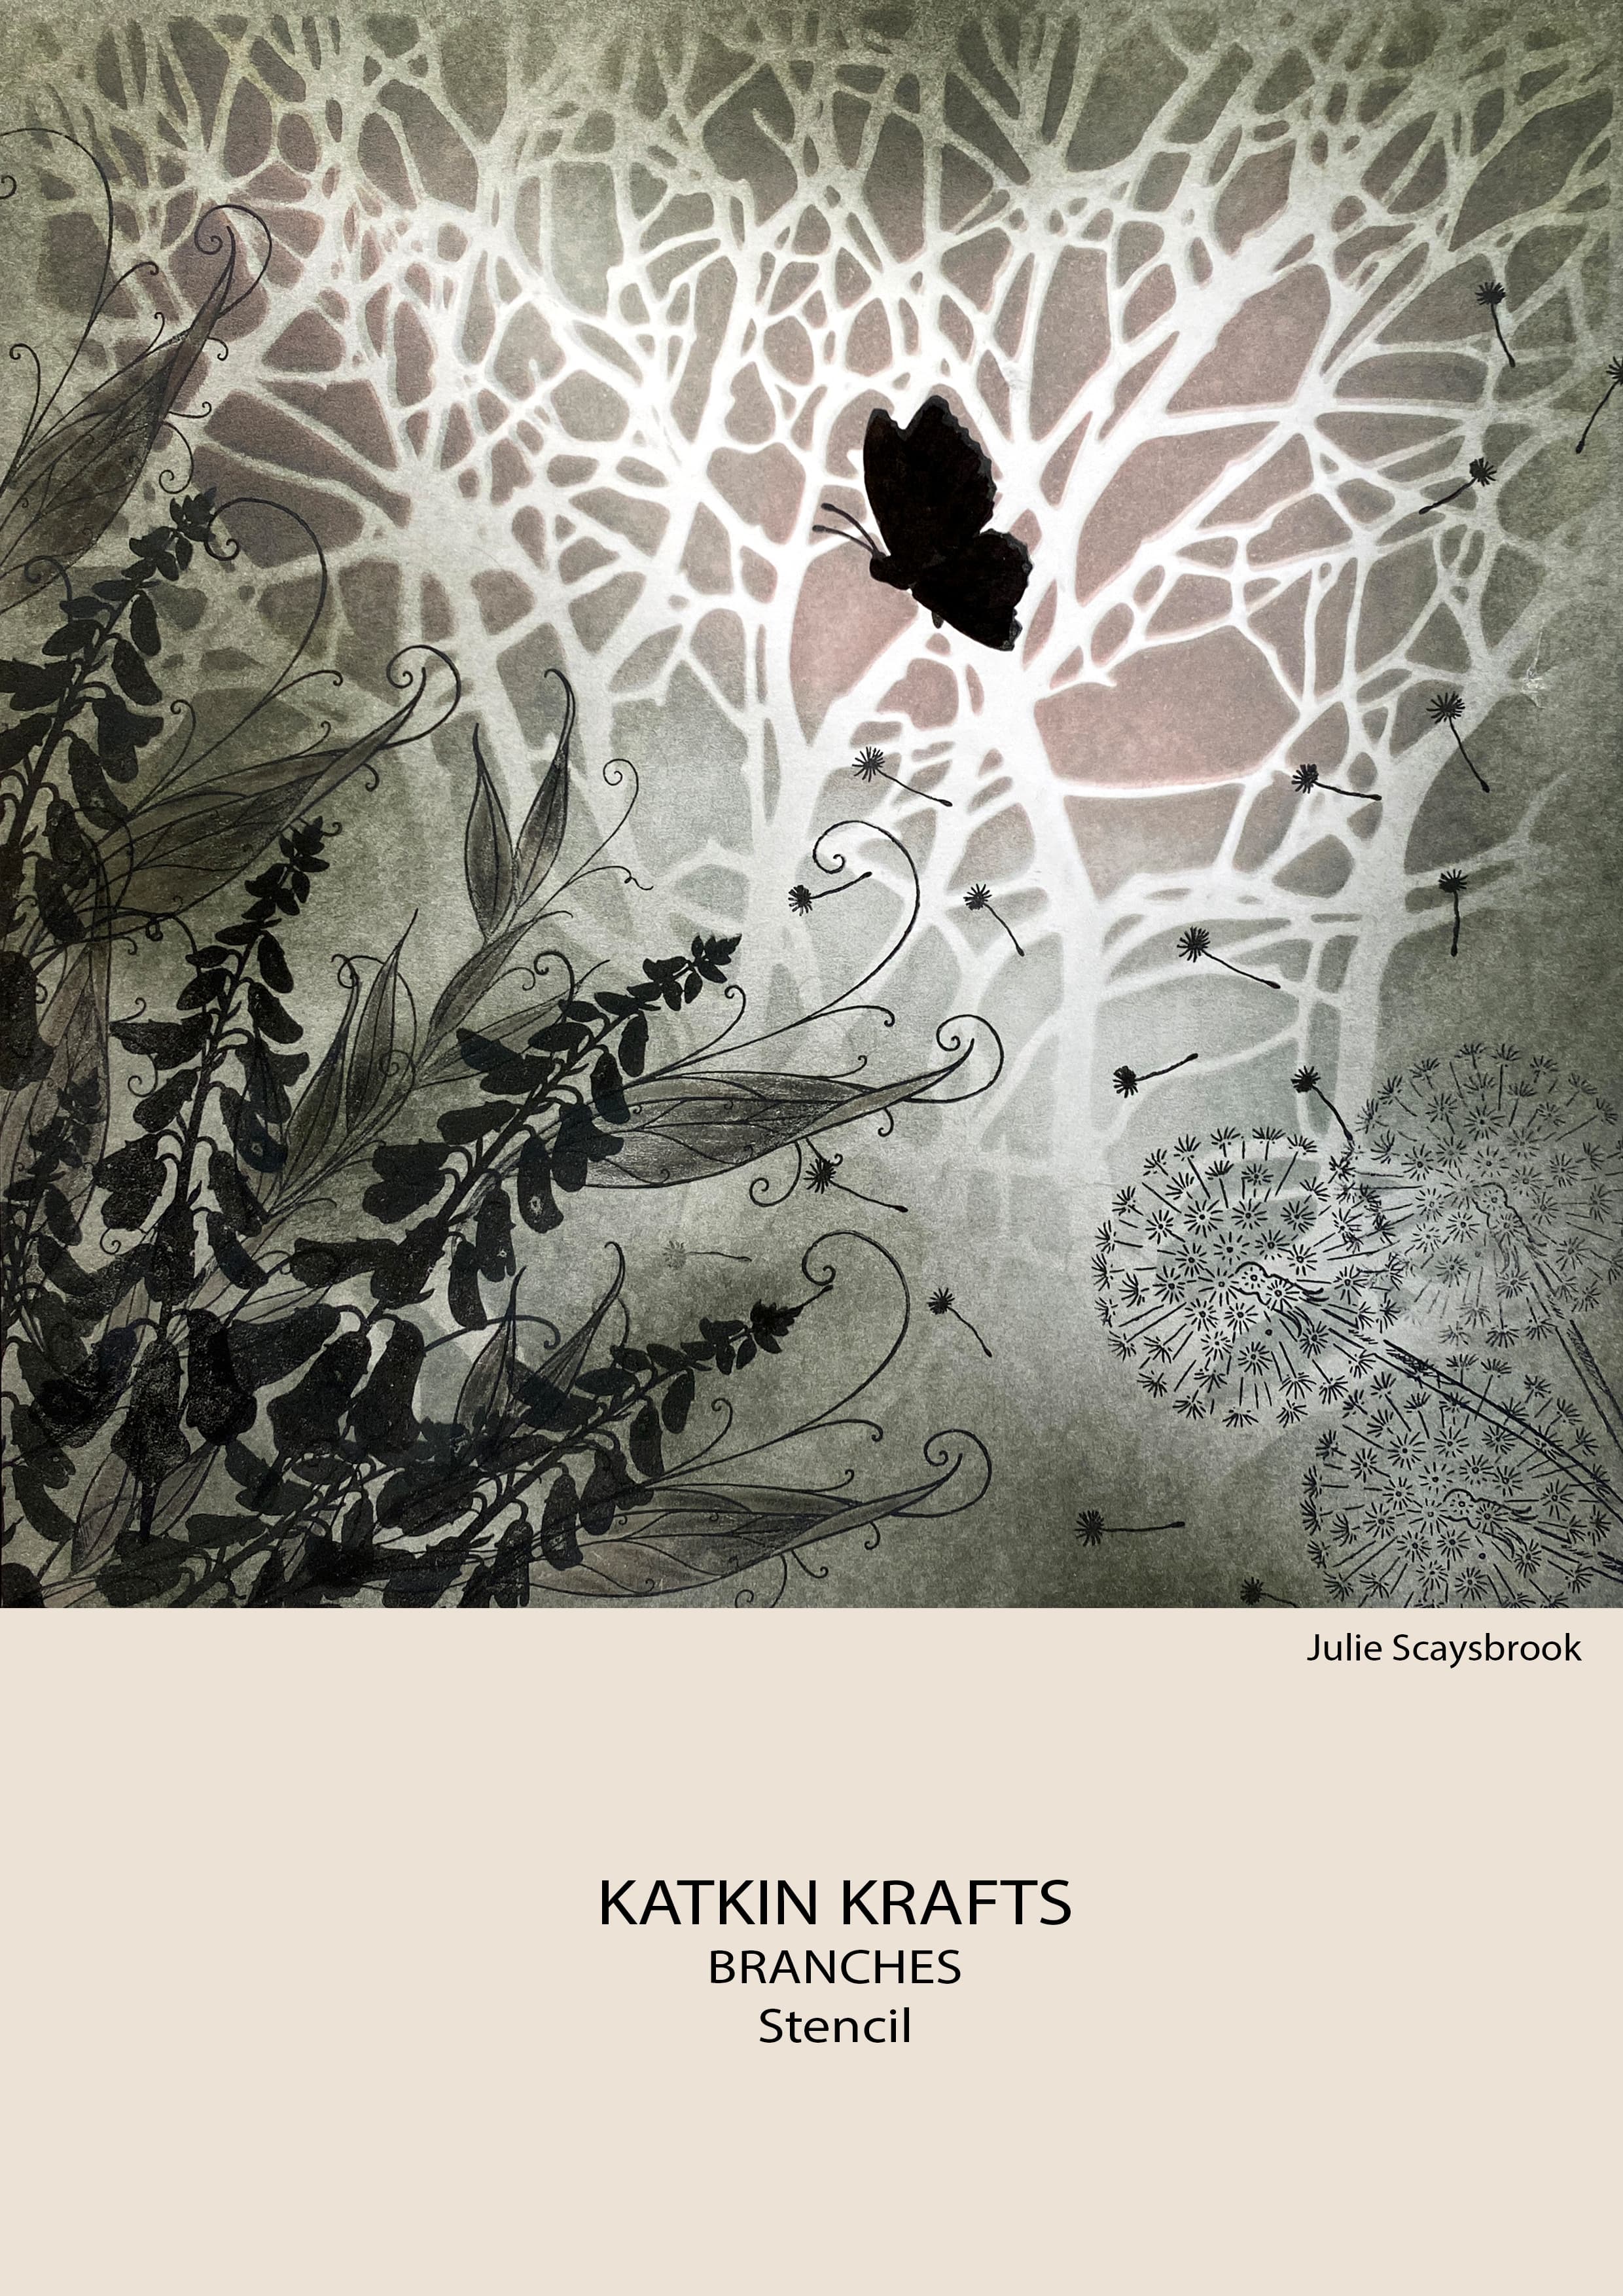 Katkin Krafts Branches 7 in x 7 in Stencil